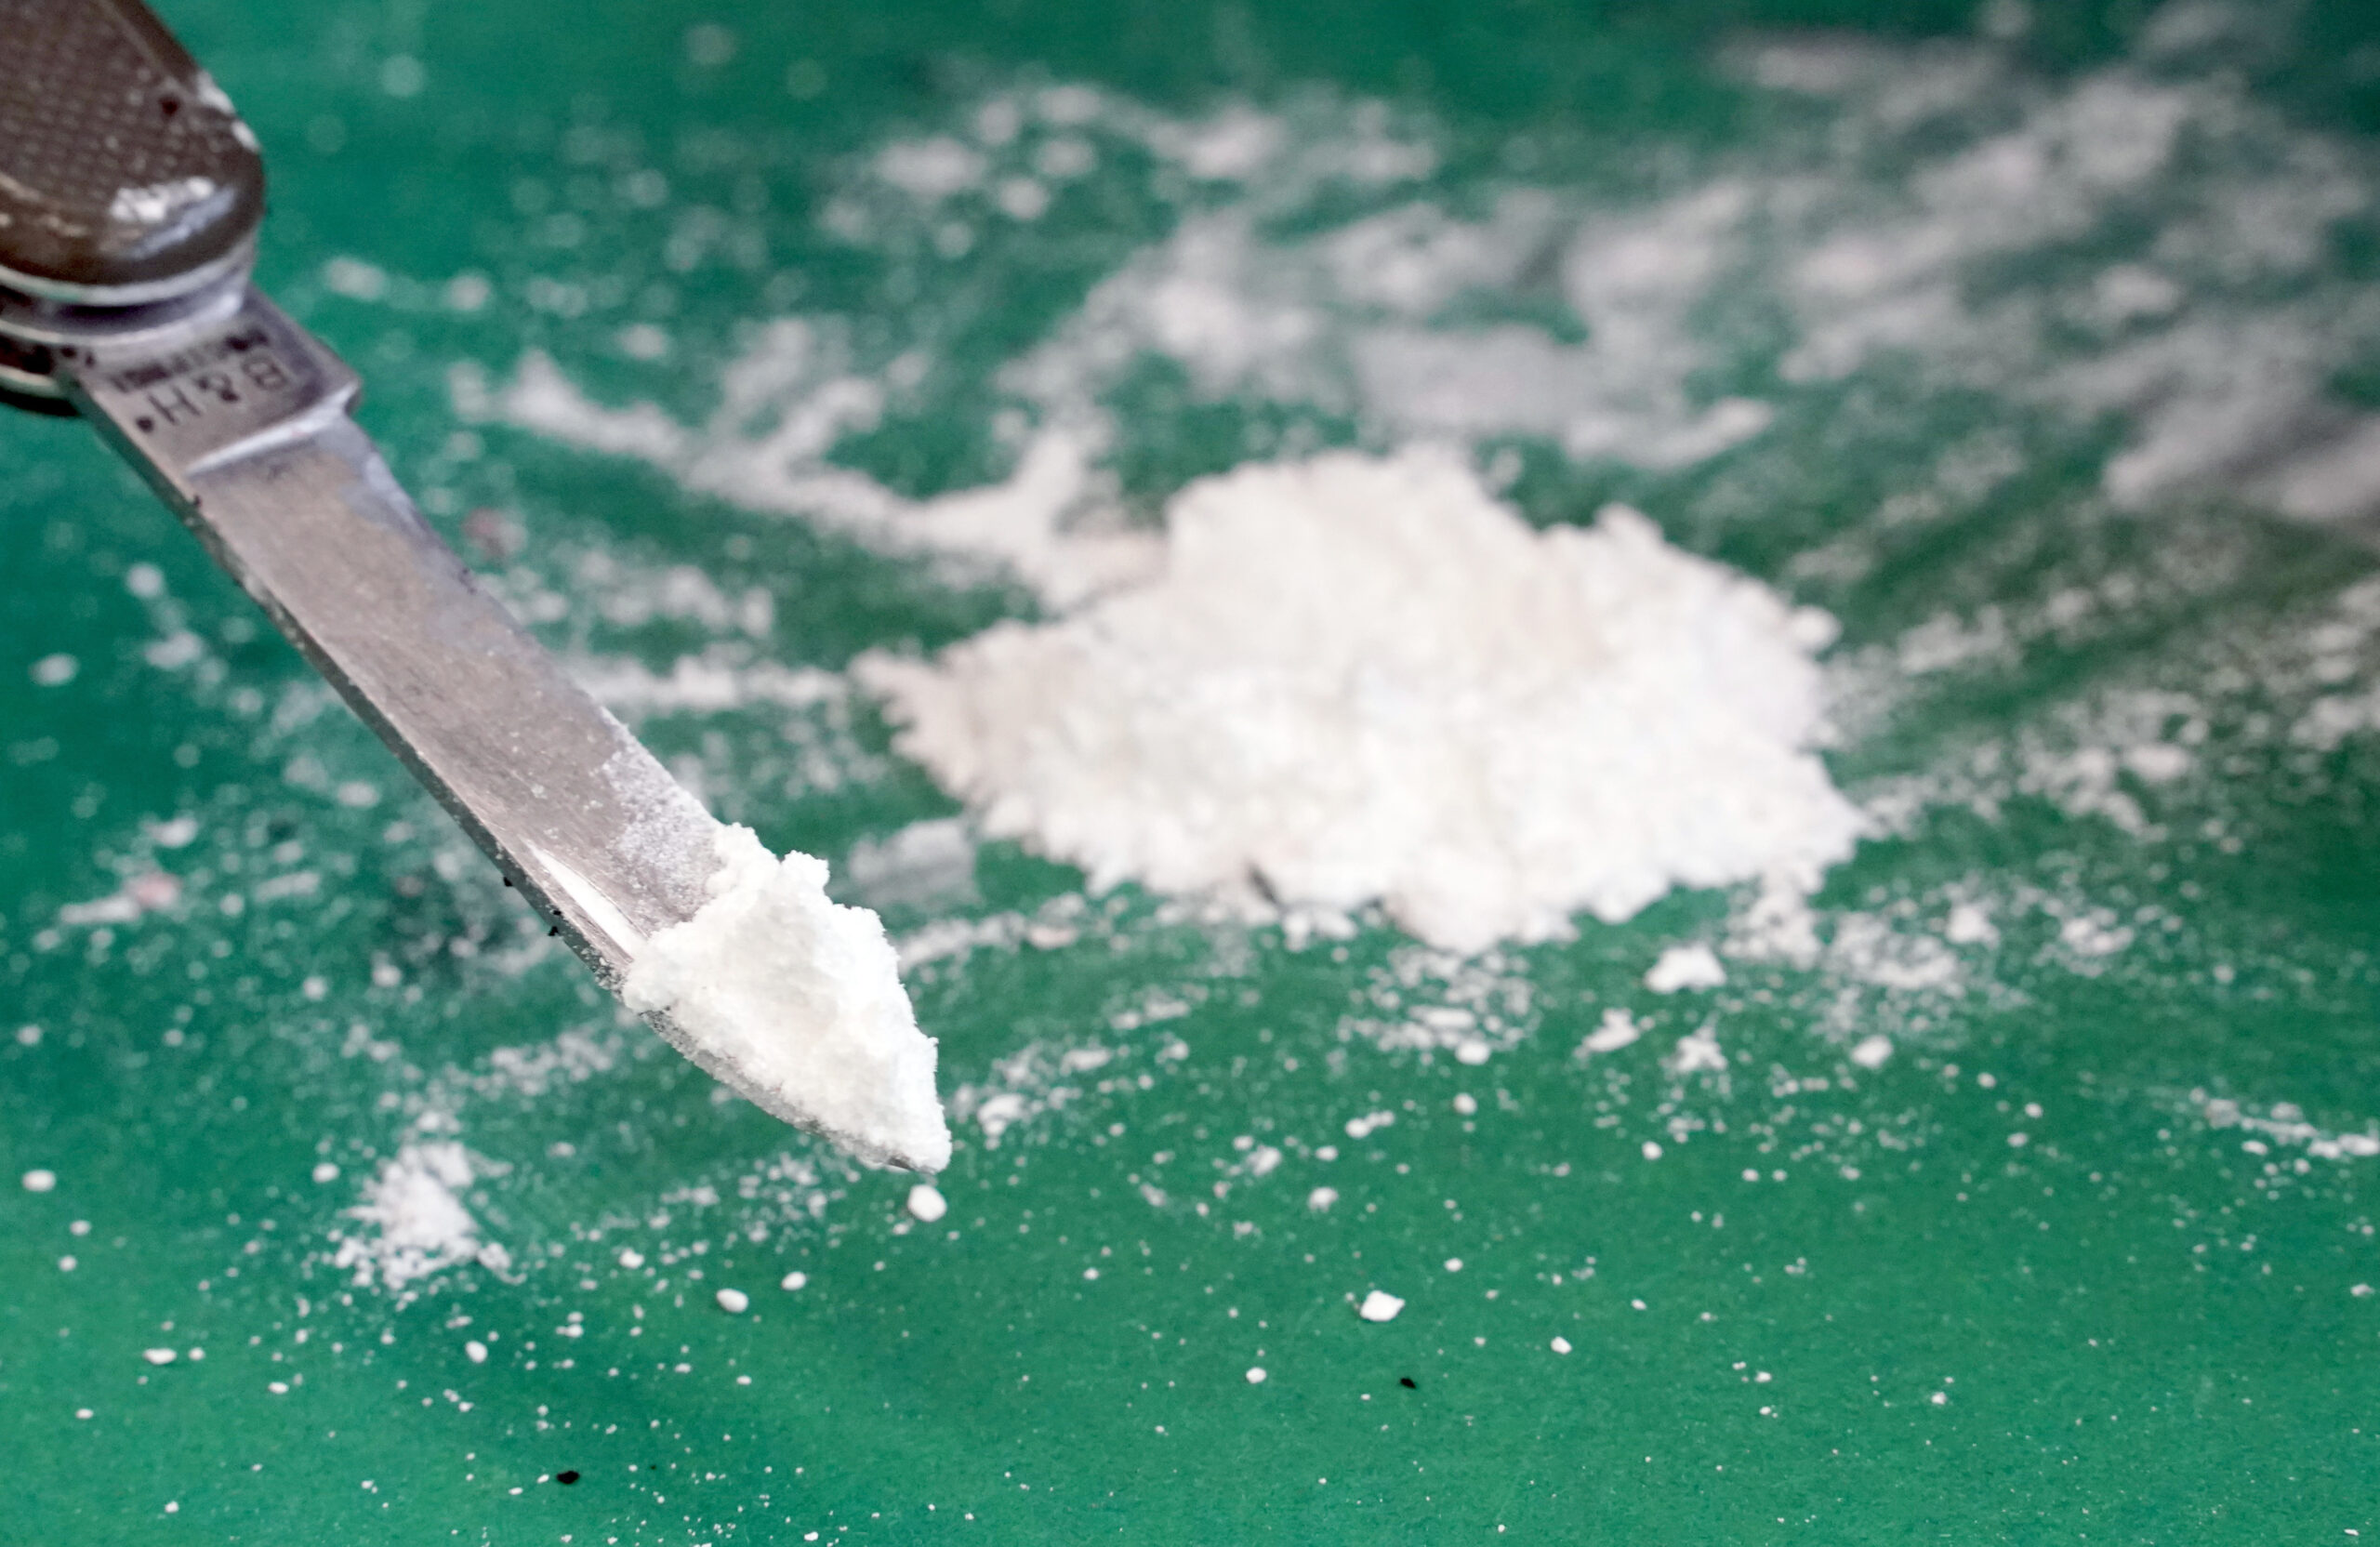 Ein Häufchen Kokain liegt auf einem Tisch.